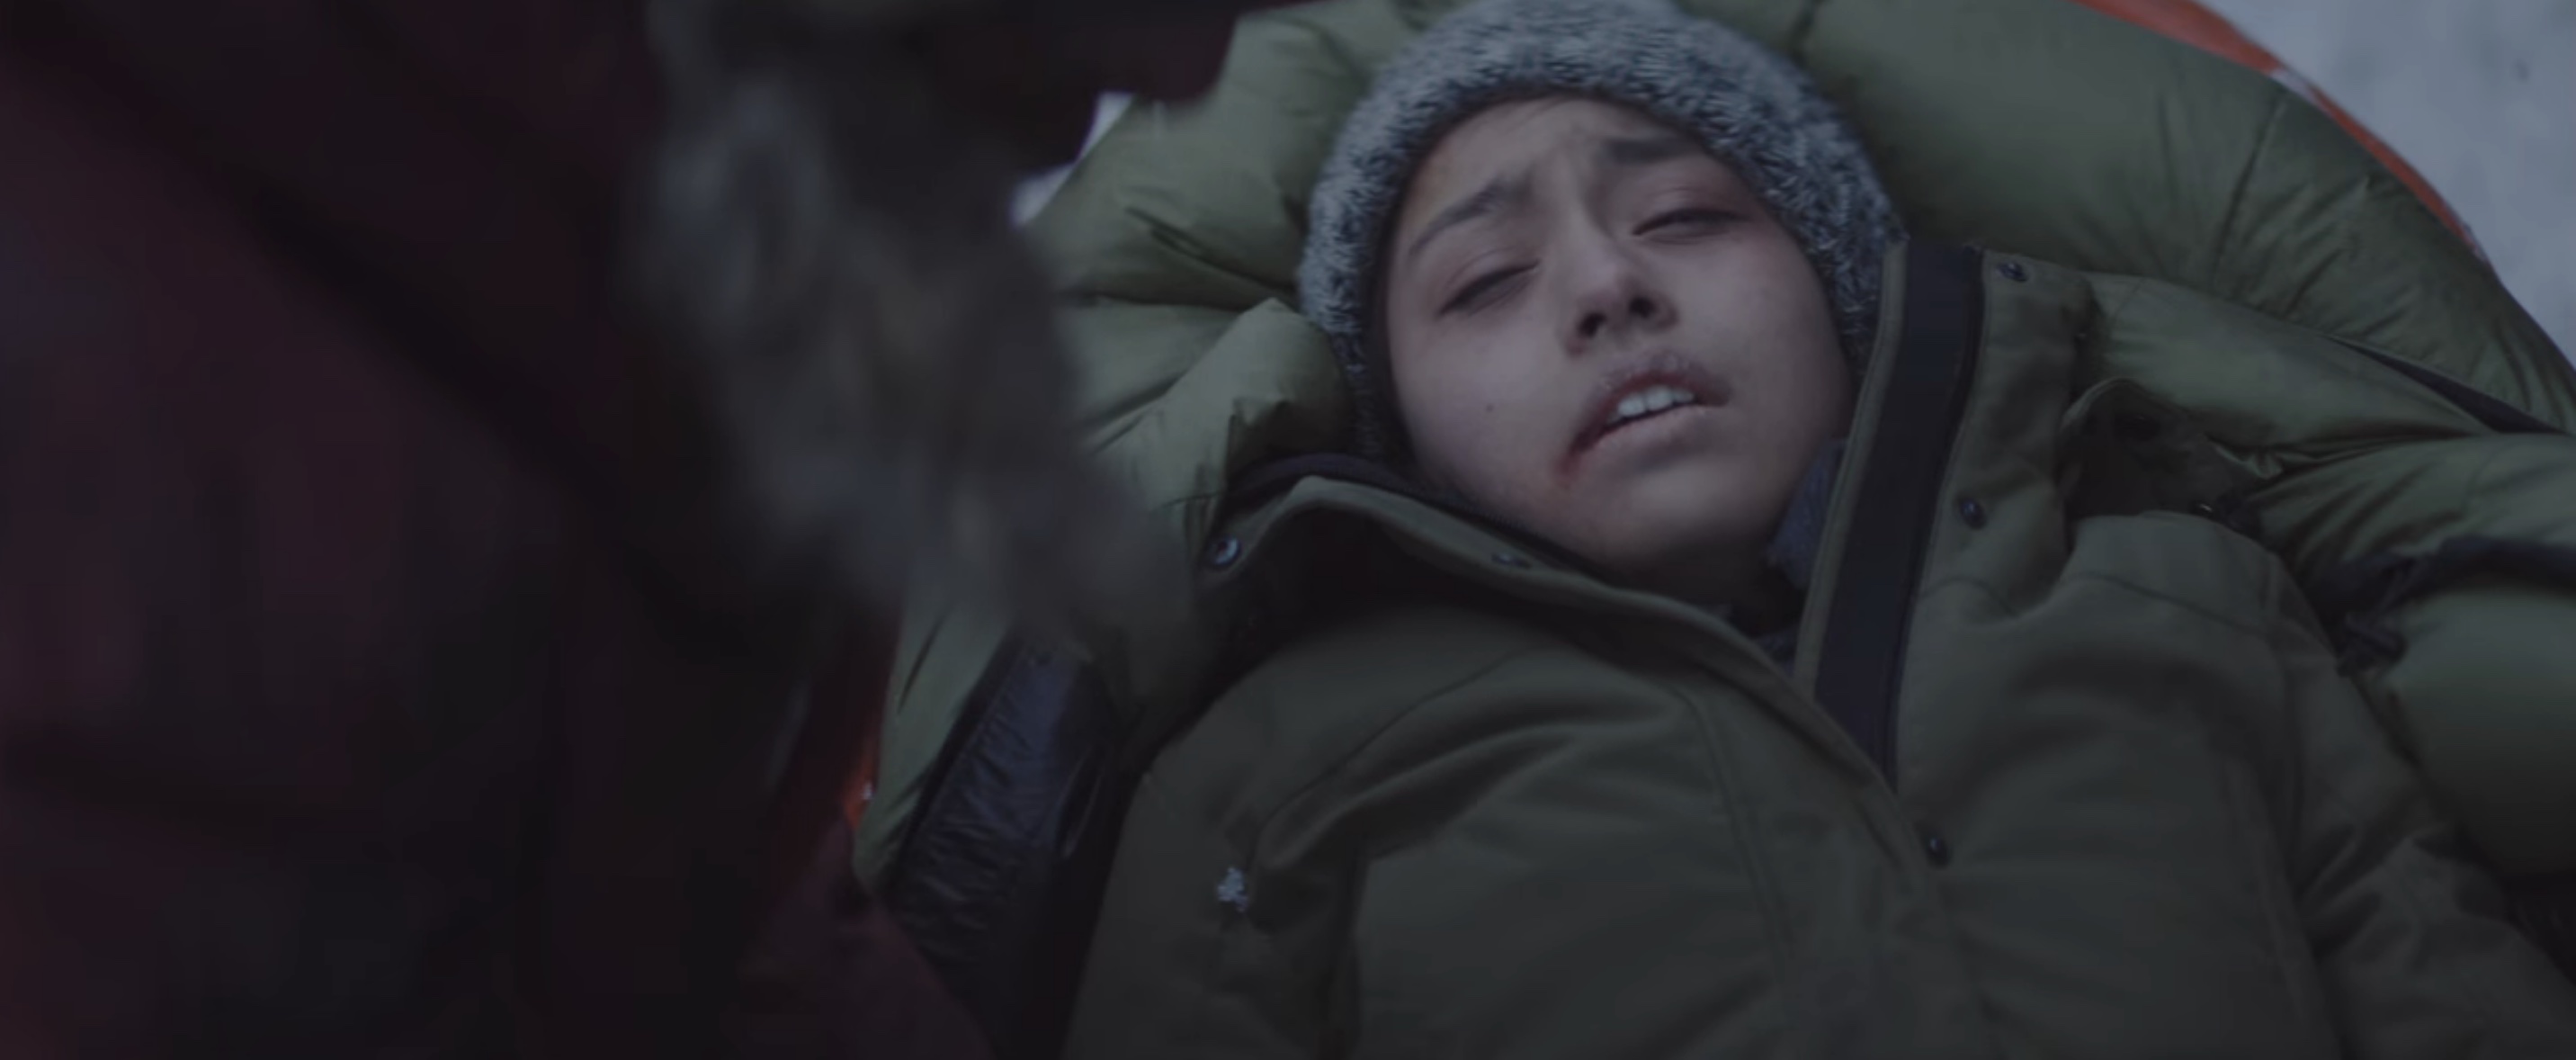 Arctic Cast on Netflix - Maria Thelma Smáradóttir as Young Woman